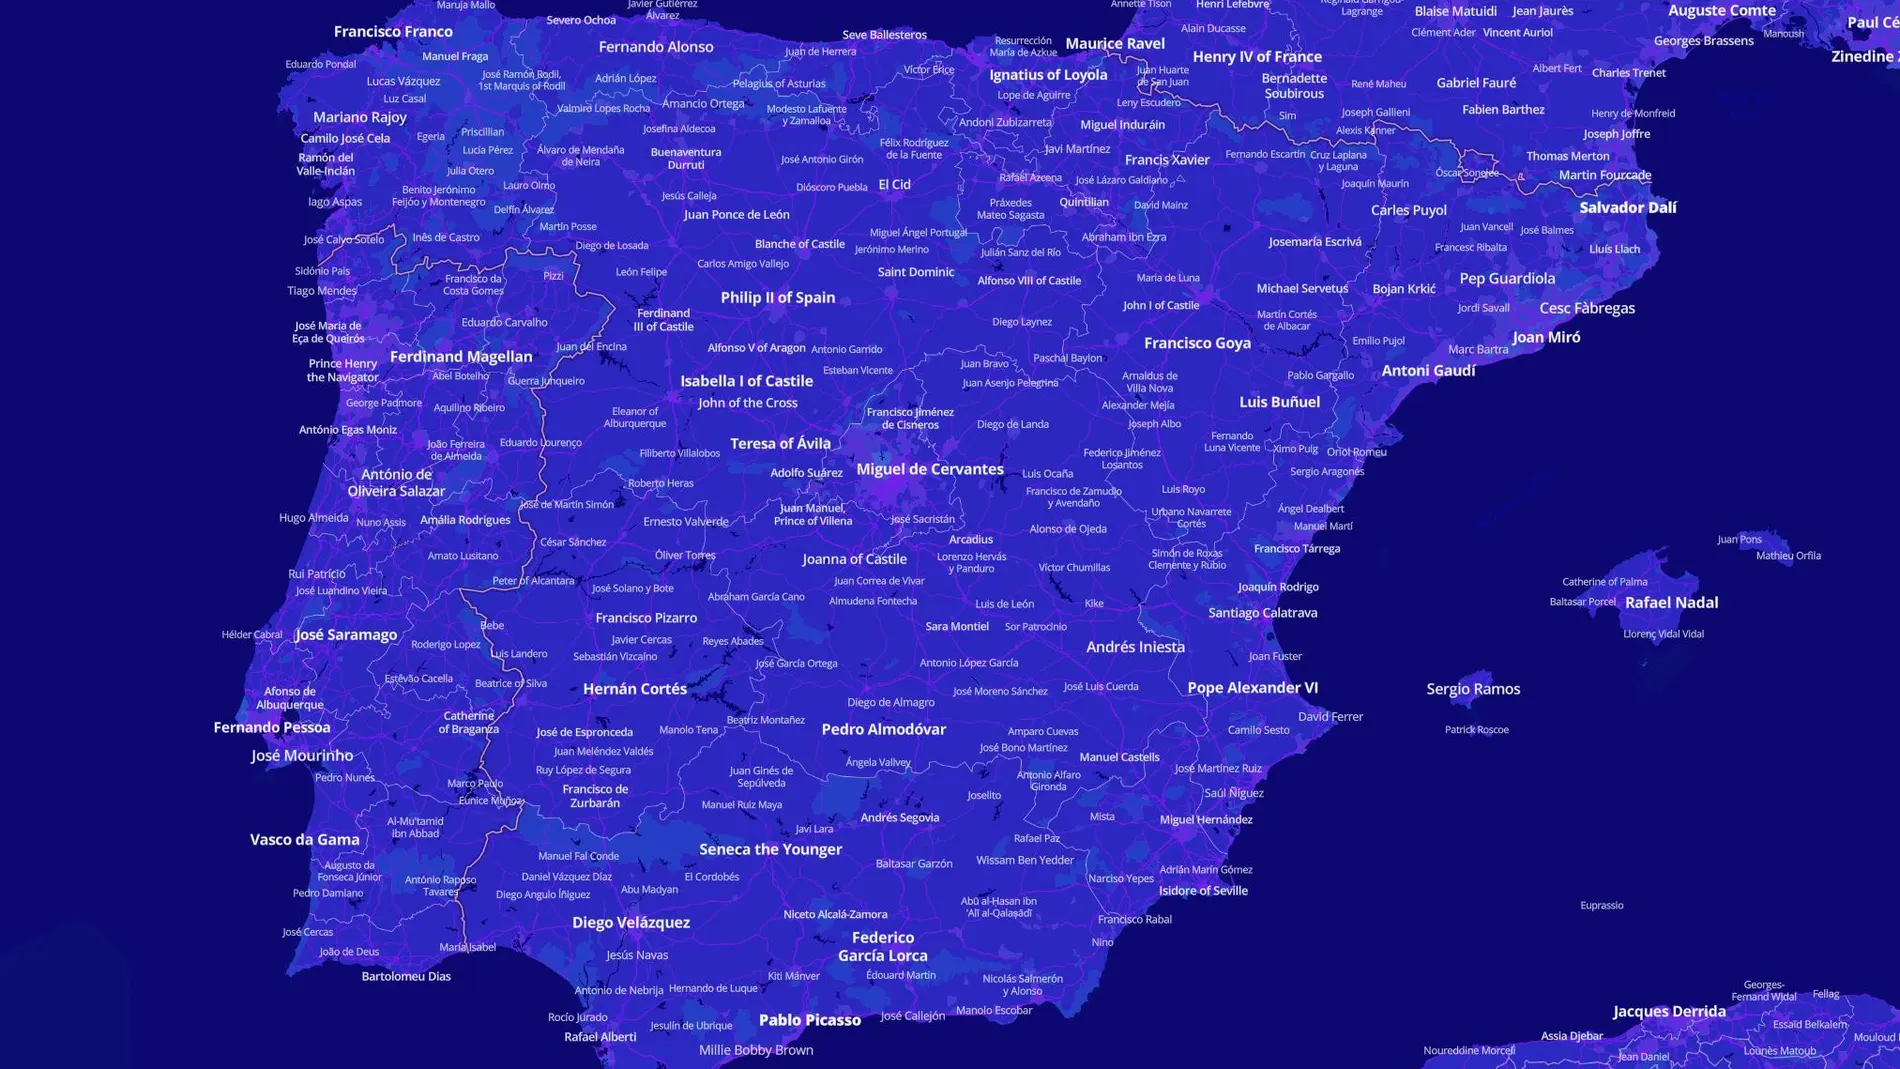 Conforme se acerca la vista, el mapa muestra más personalidades notables nacidas en distintos puntos de España.